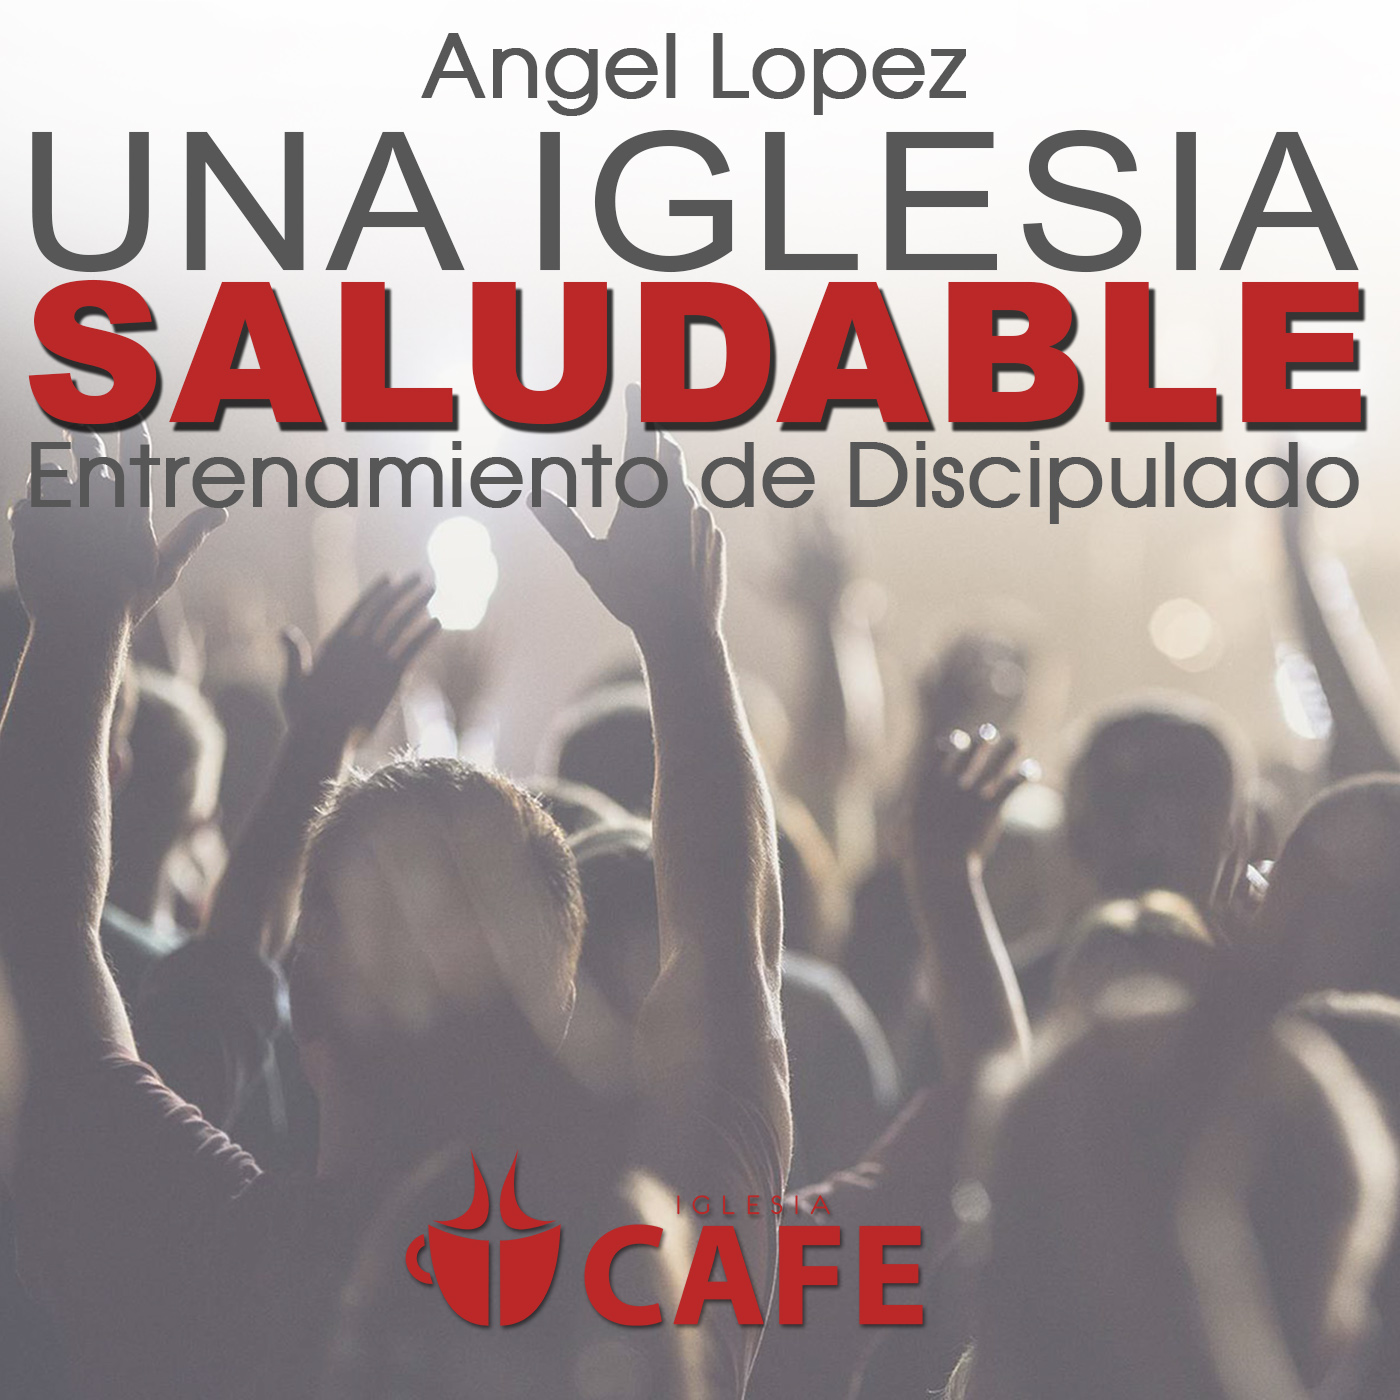 1) Angel Lopez - El Proposito de la Iglesia